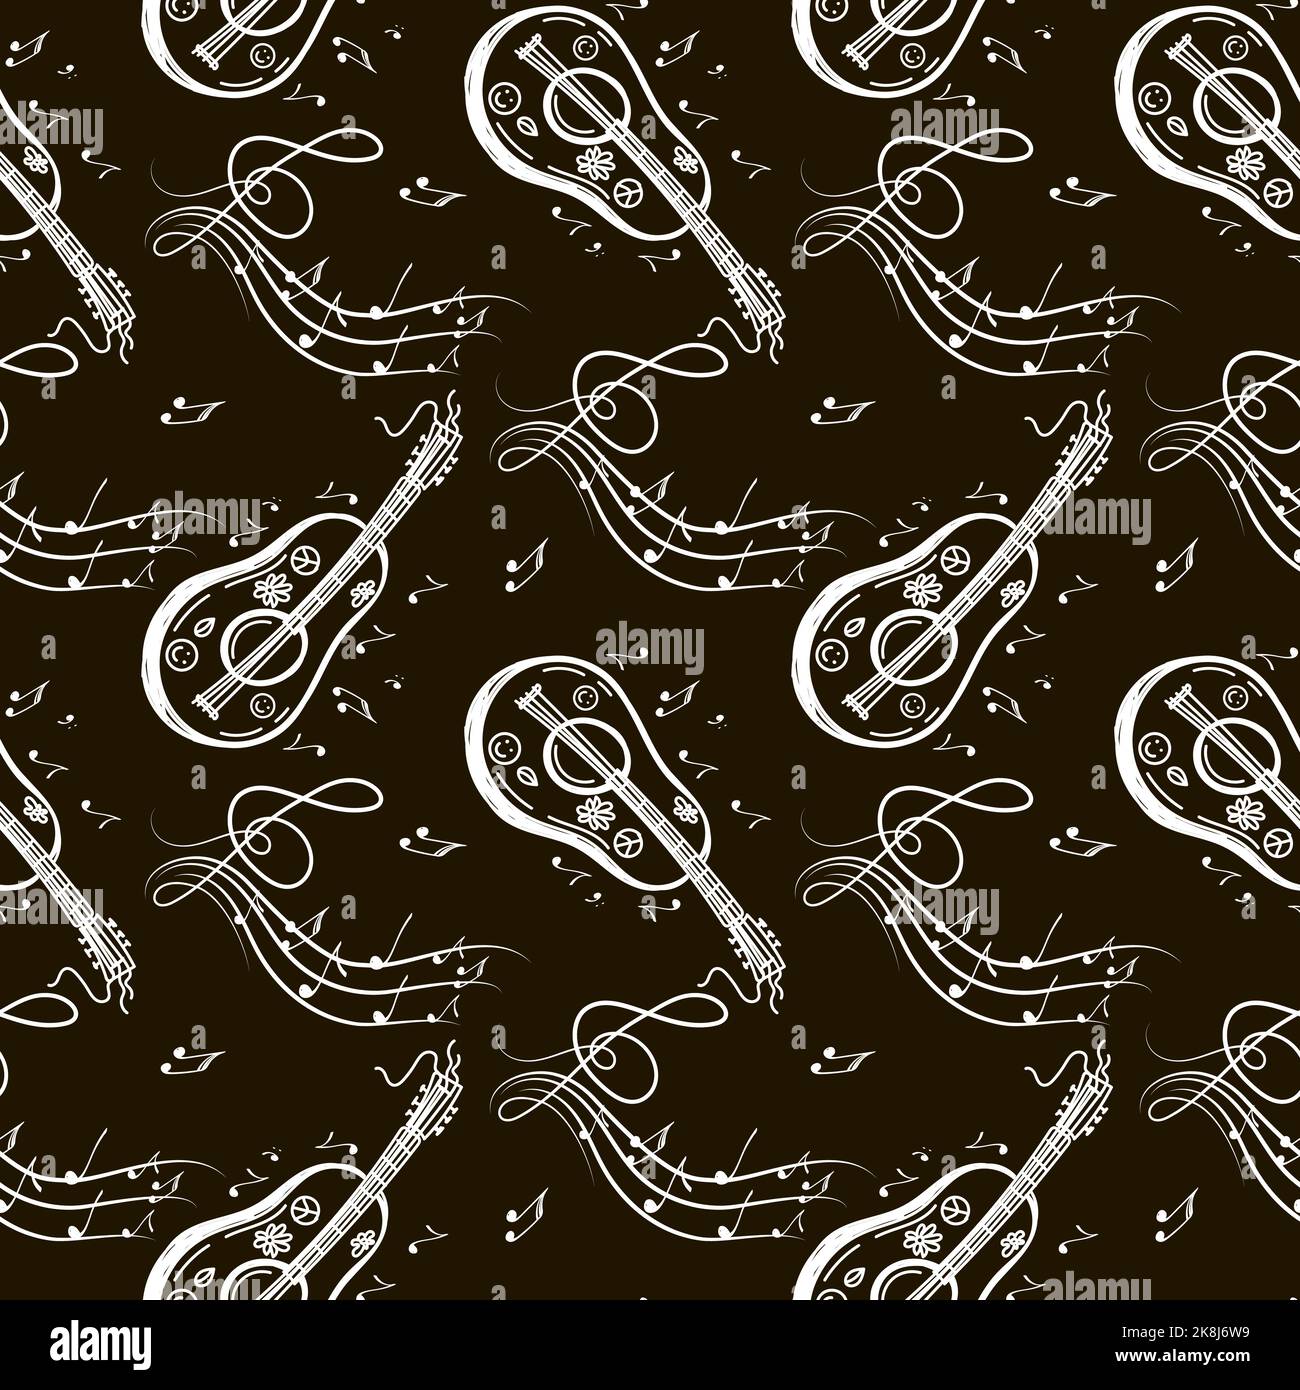 Ein nahtloses Muster aus musikalischen Symbolen, Gitarre, Ukulele, Noten und Geigenschlüsseln. Handgezeichnete Doodle-Stil-Elemente. Vektorgrafik auf schwarzem Backgro Stock Vektor